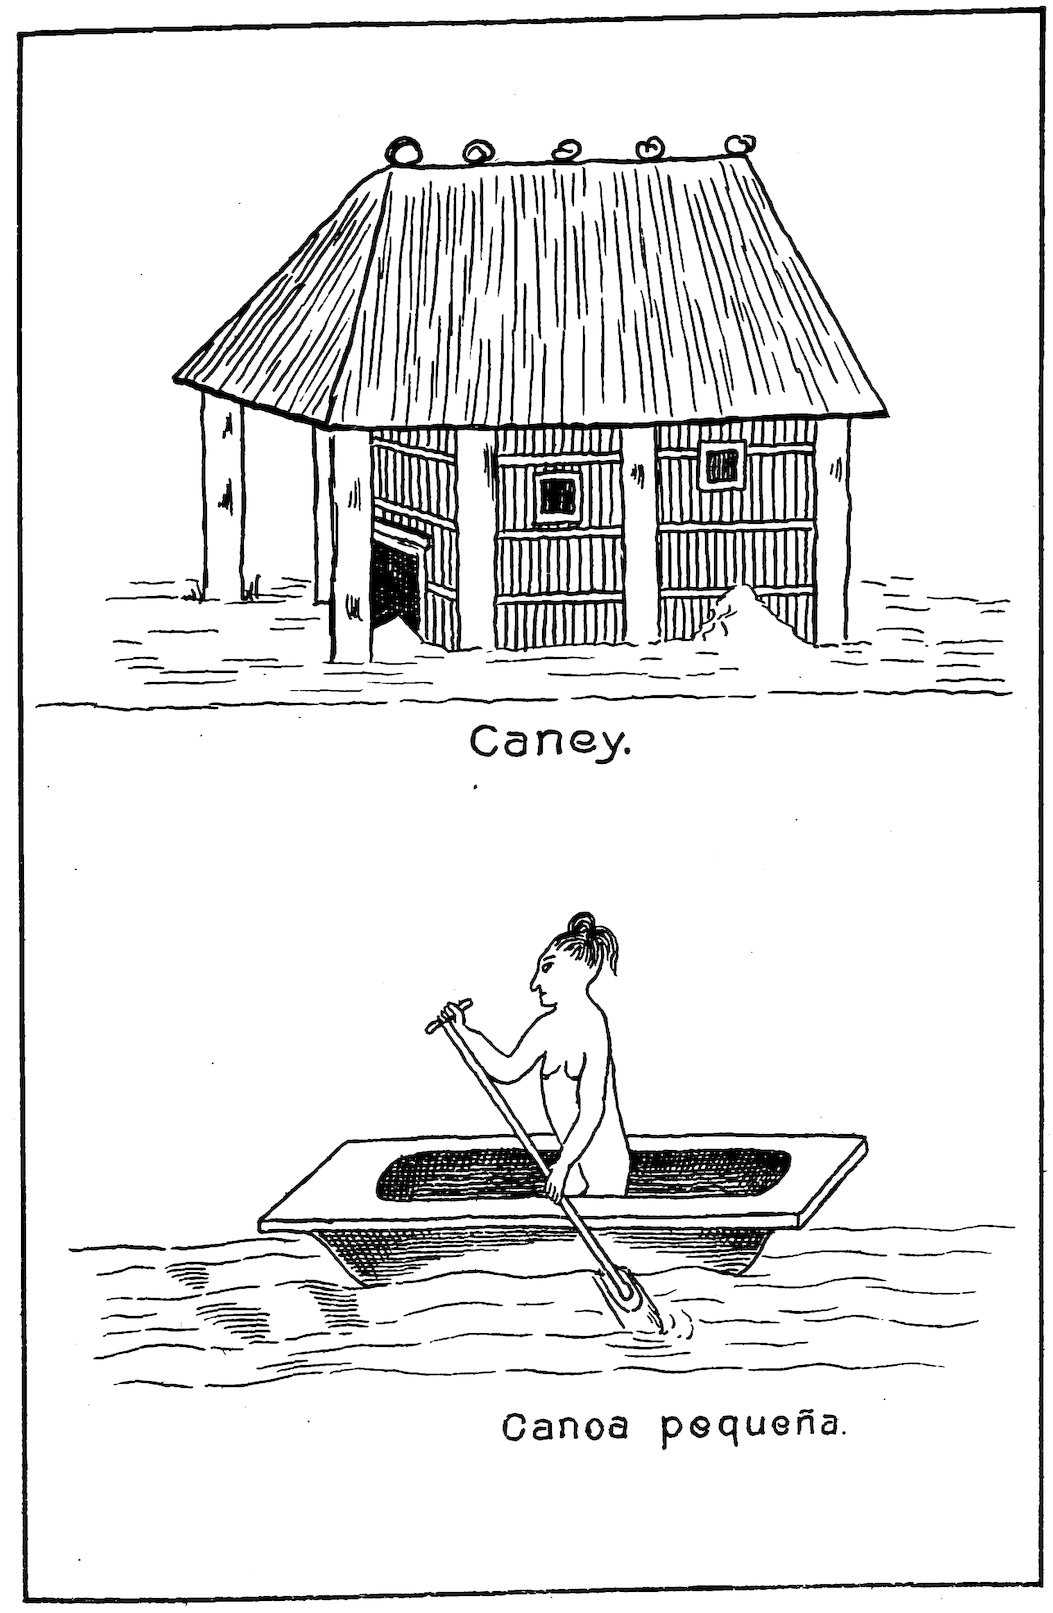 Caney. Canoa pequeña.